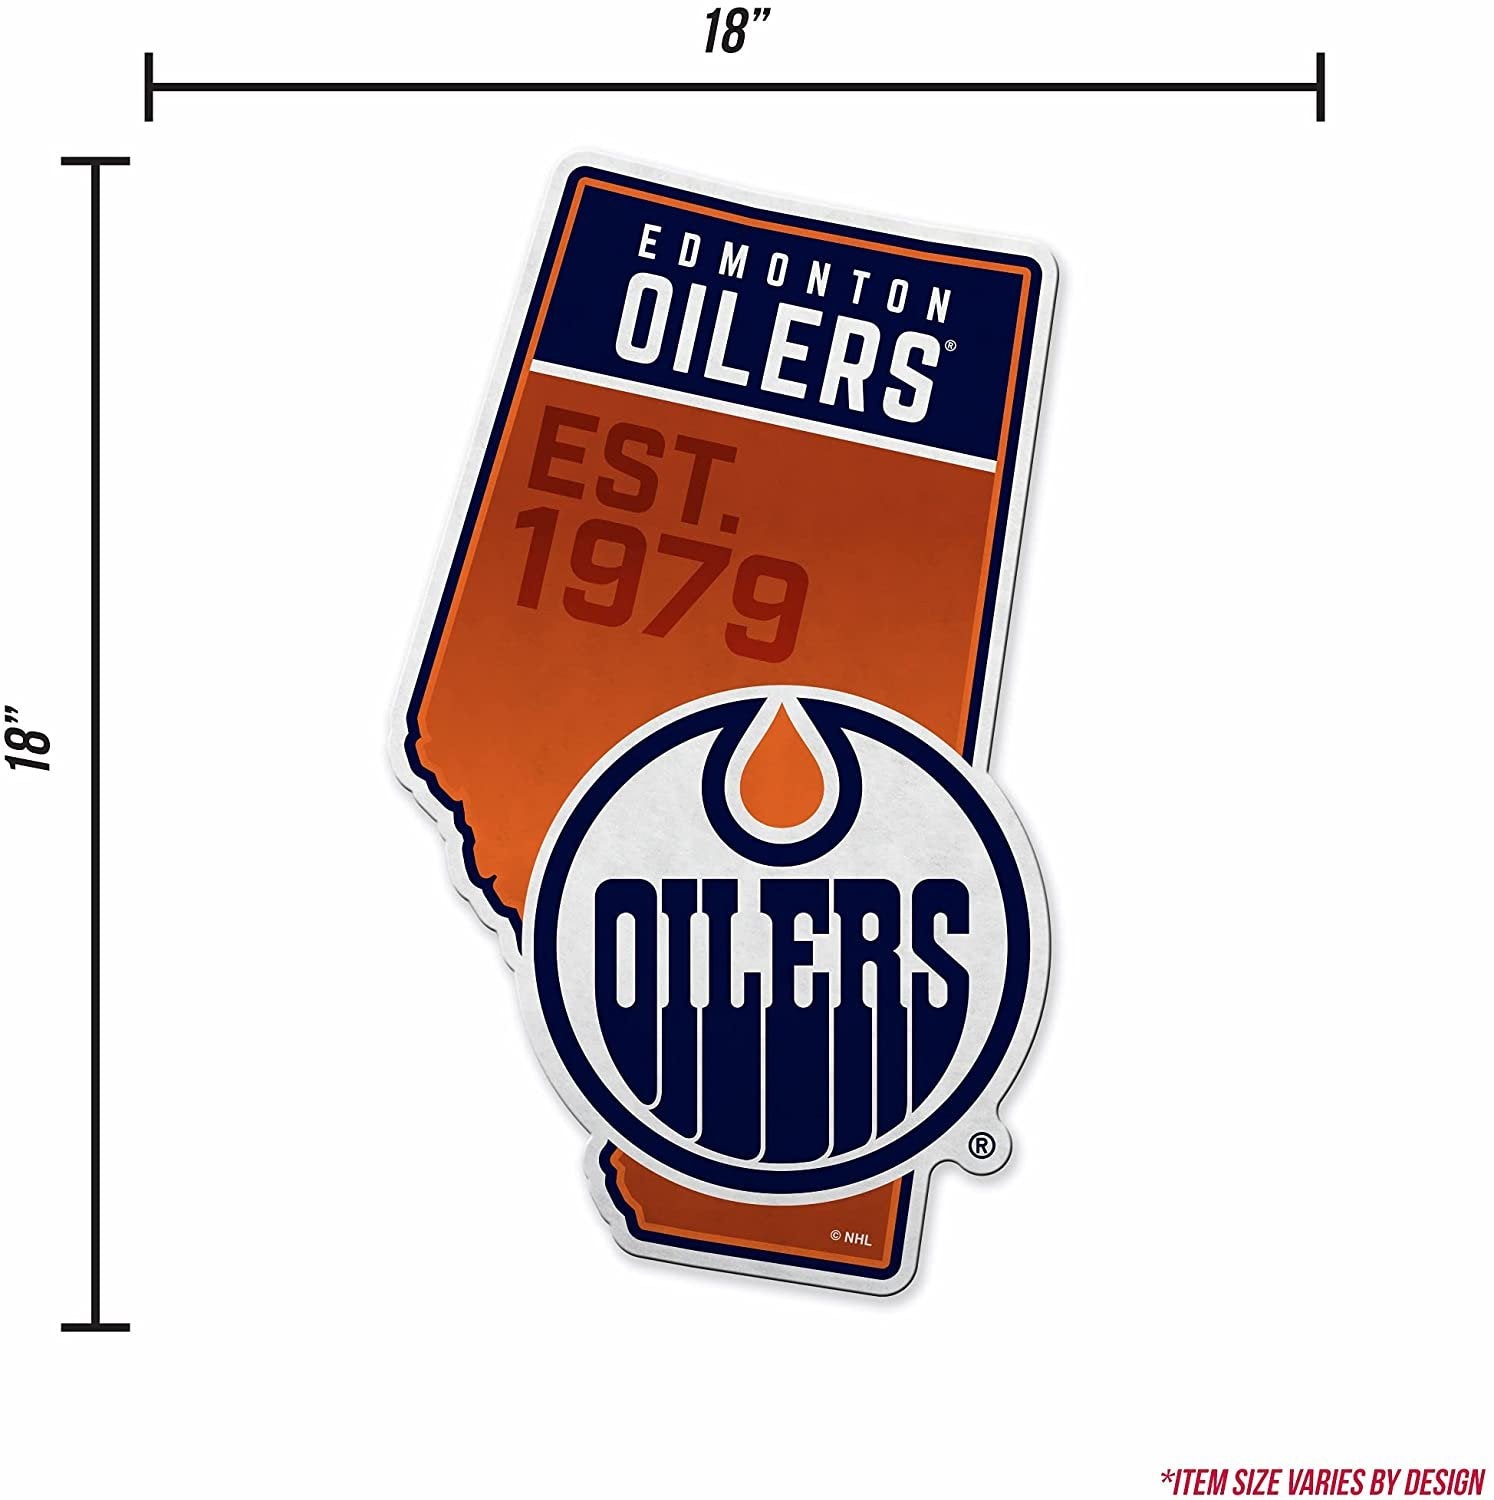 Edmonton Oilers 18" State Shape Pennant Soft Felt